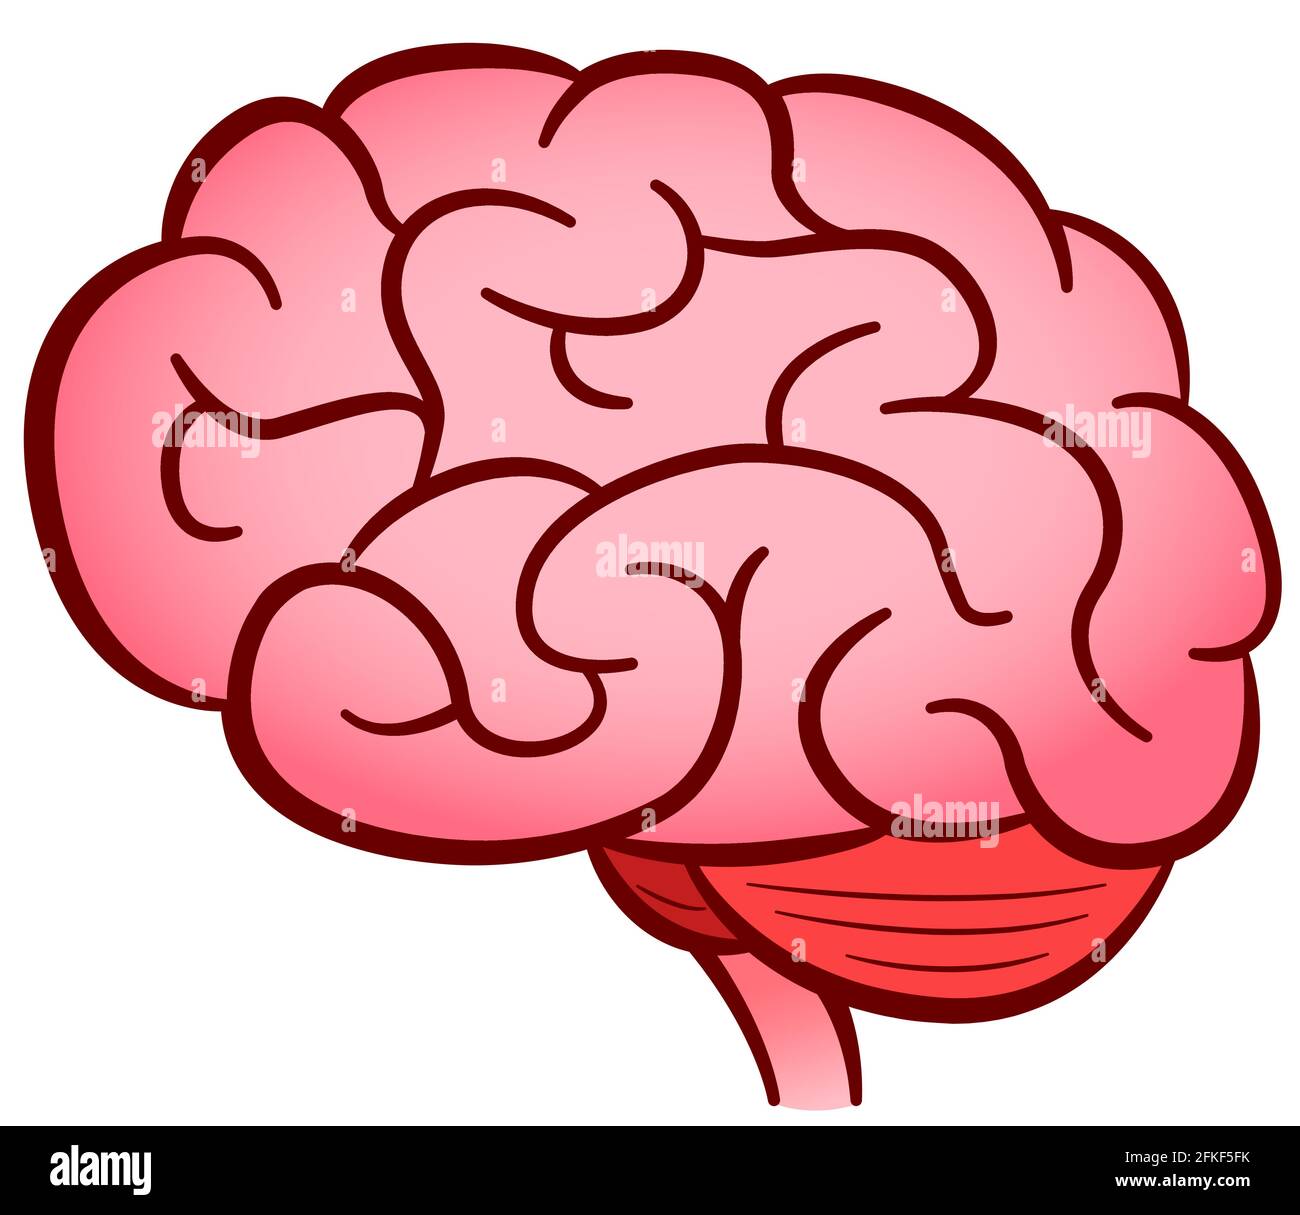 Vektor-Illustration des menschlichen Gehirns isoliert Design Stock Vektor